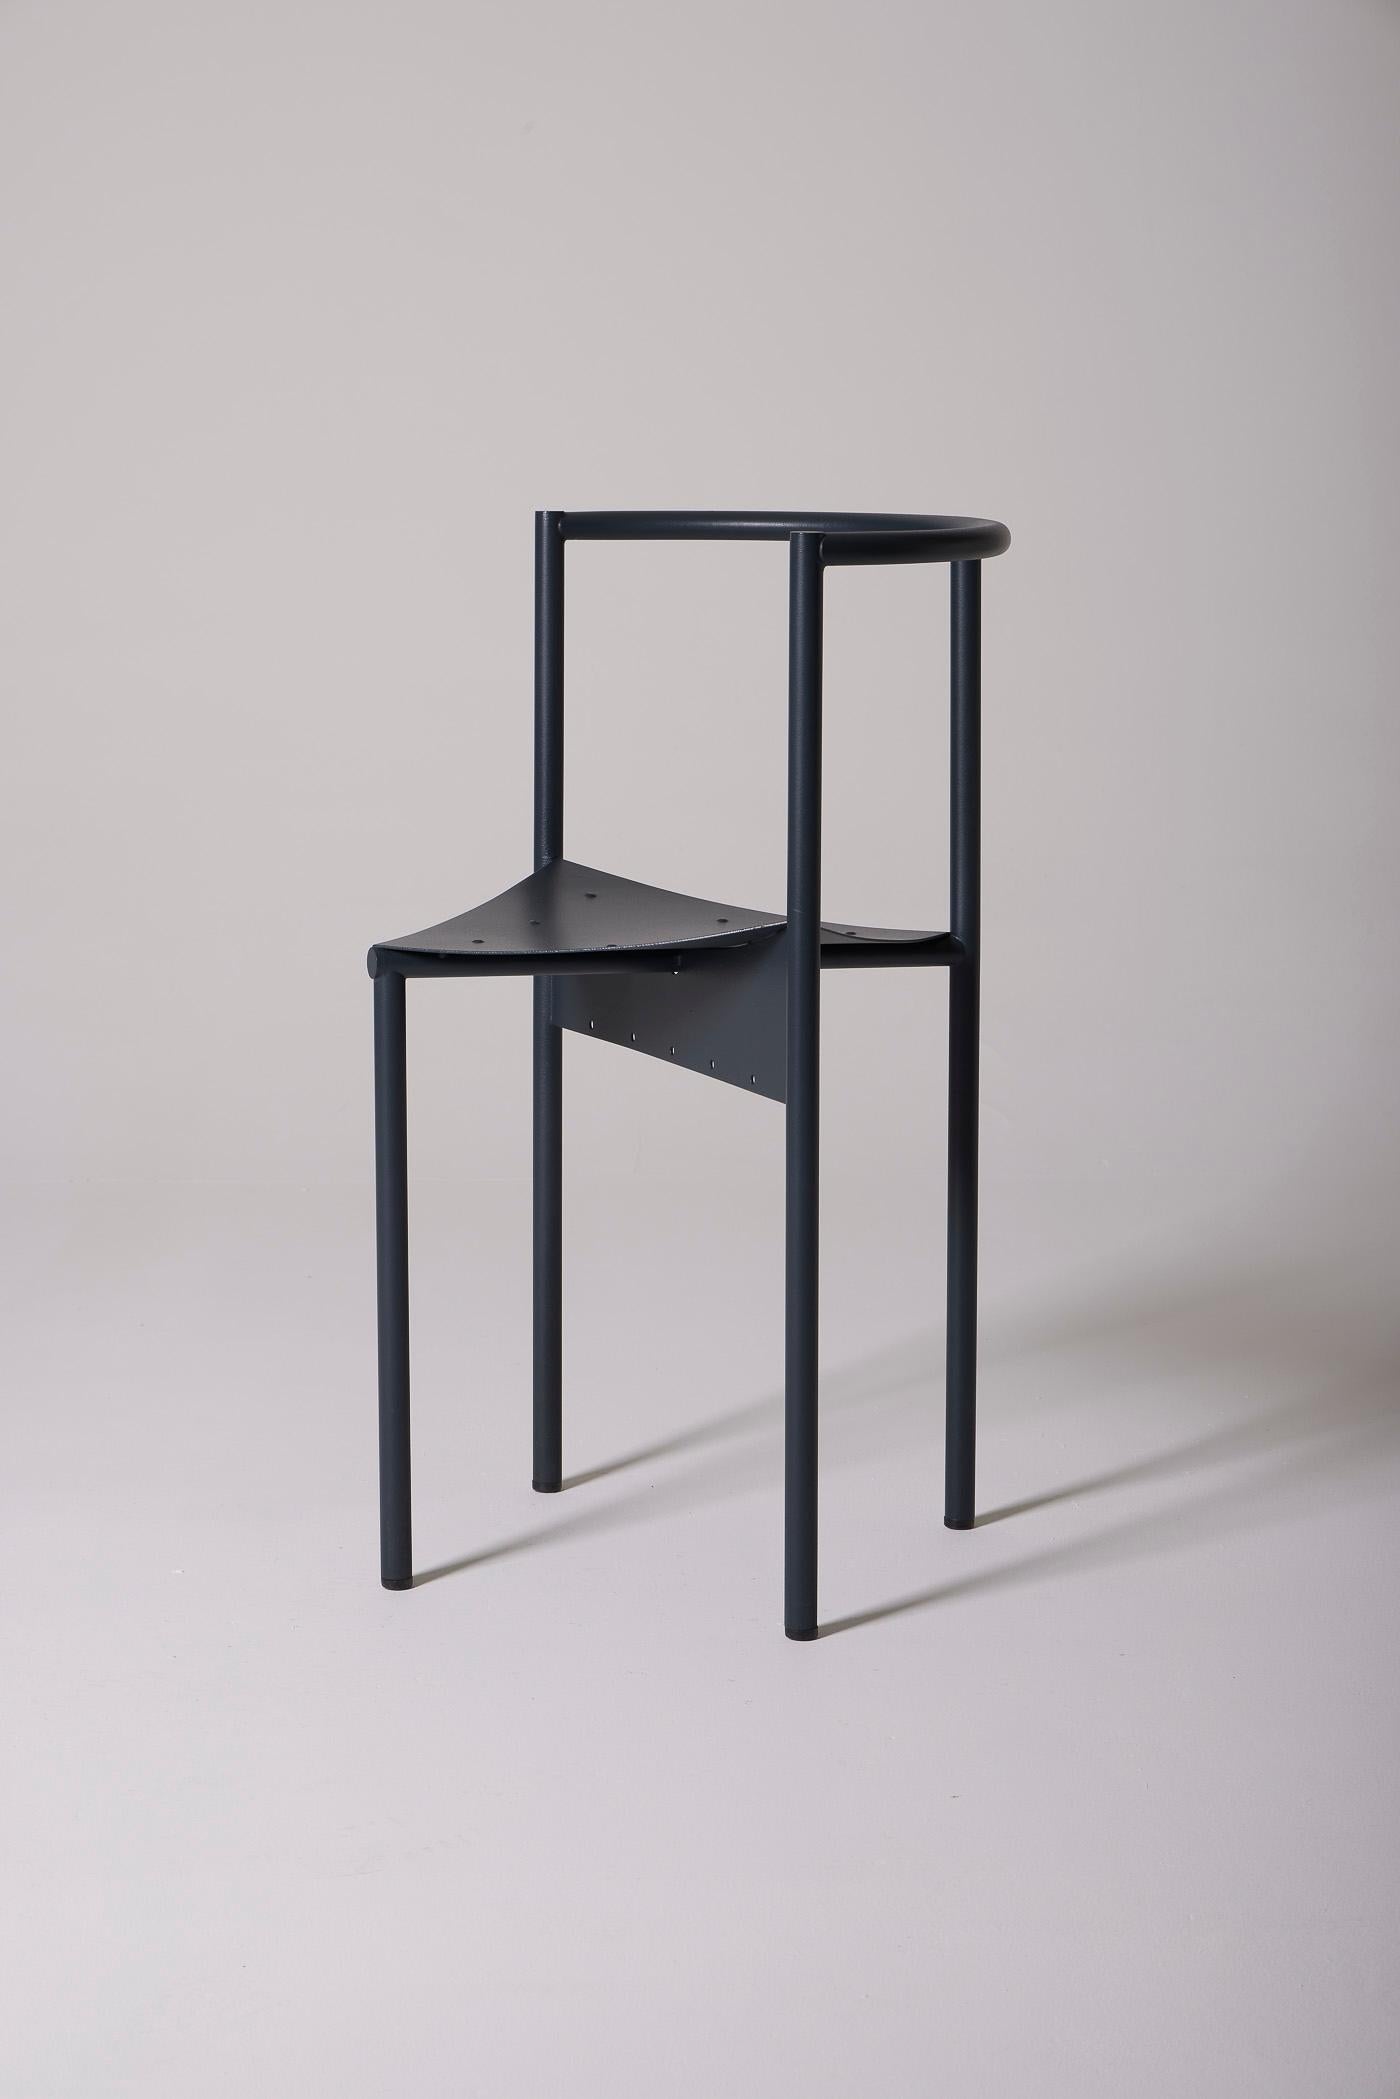 Chaise modèle Wendy Wright du designer français Philippe Starck pour Disform, datant des années 1980. Il est en métal anodisé gris. En très bon état.
DV517